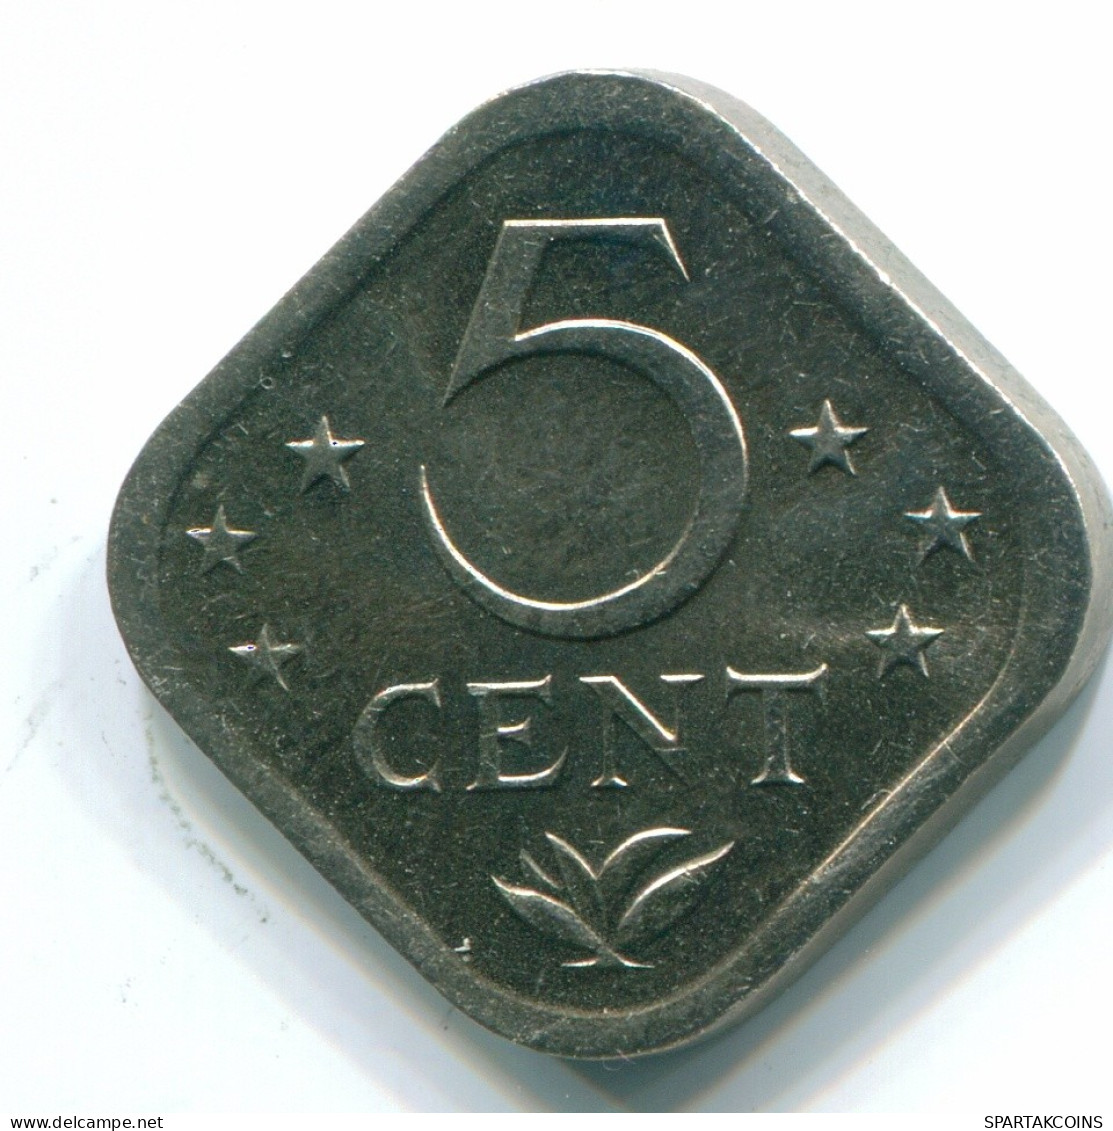 5 CENTS 1980 NIEDERLÄNDISCHE ANTILLEN Nickel Koloniale Münze #S12329.D.A - Niederländische Antillen